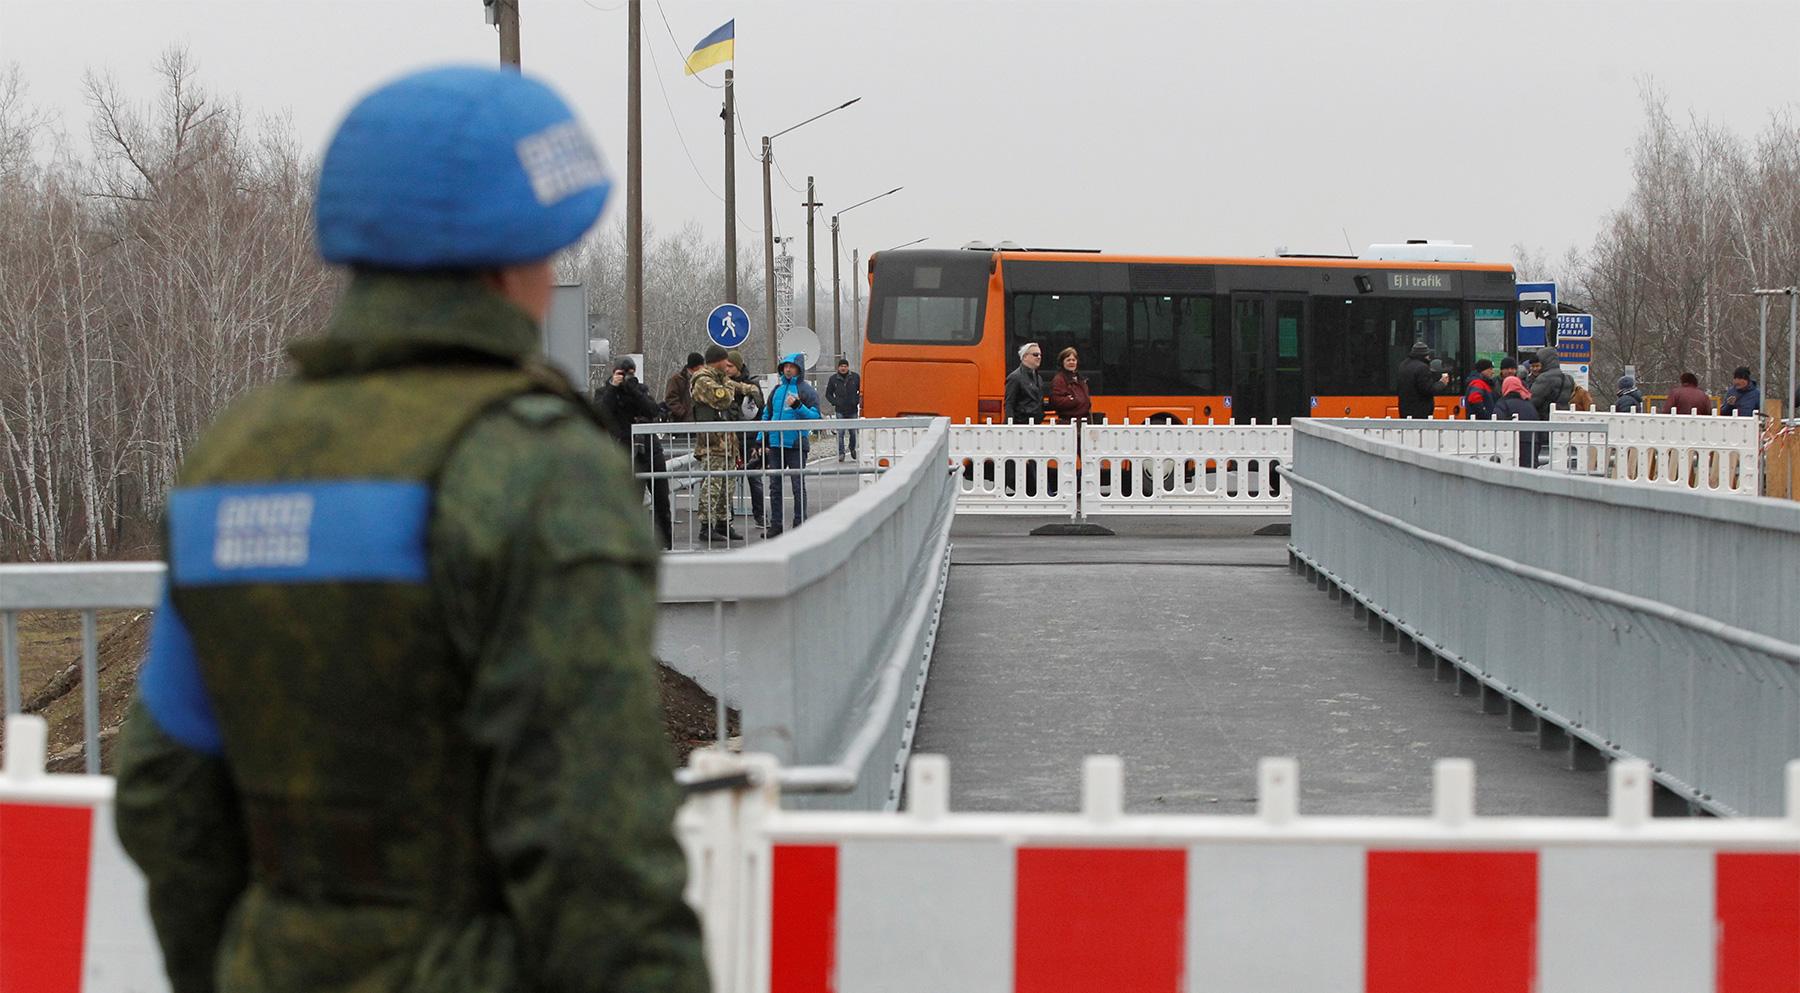 Доклад: Исследования транспортных Росийско-украинских проблем